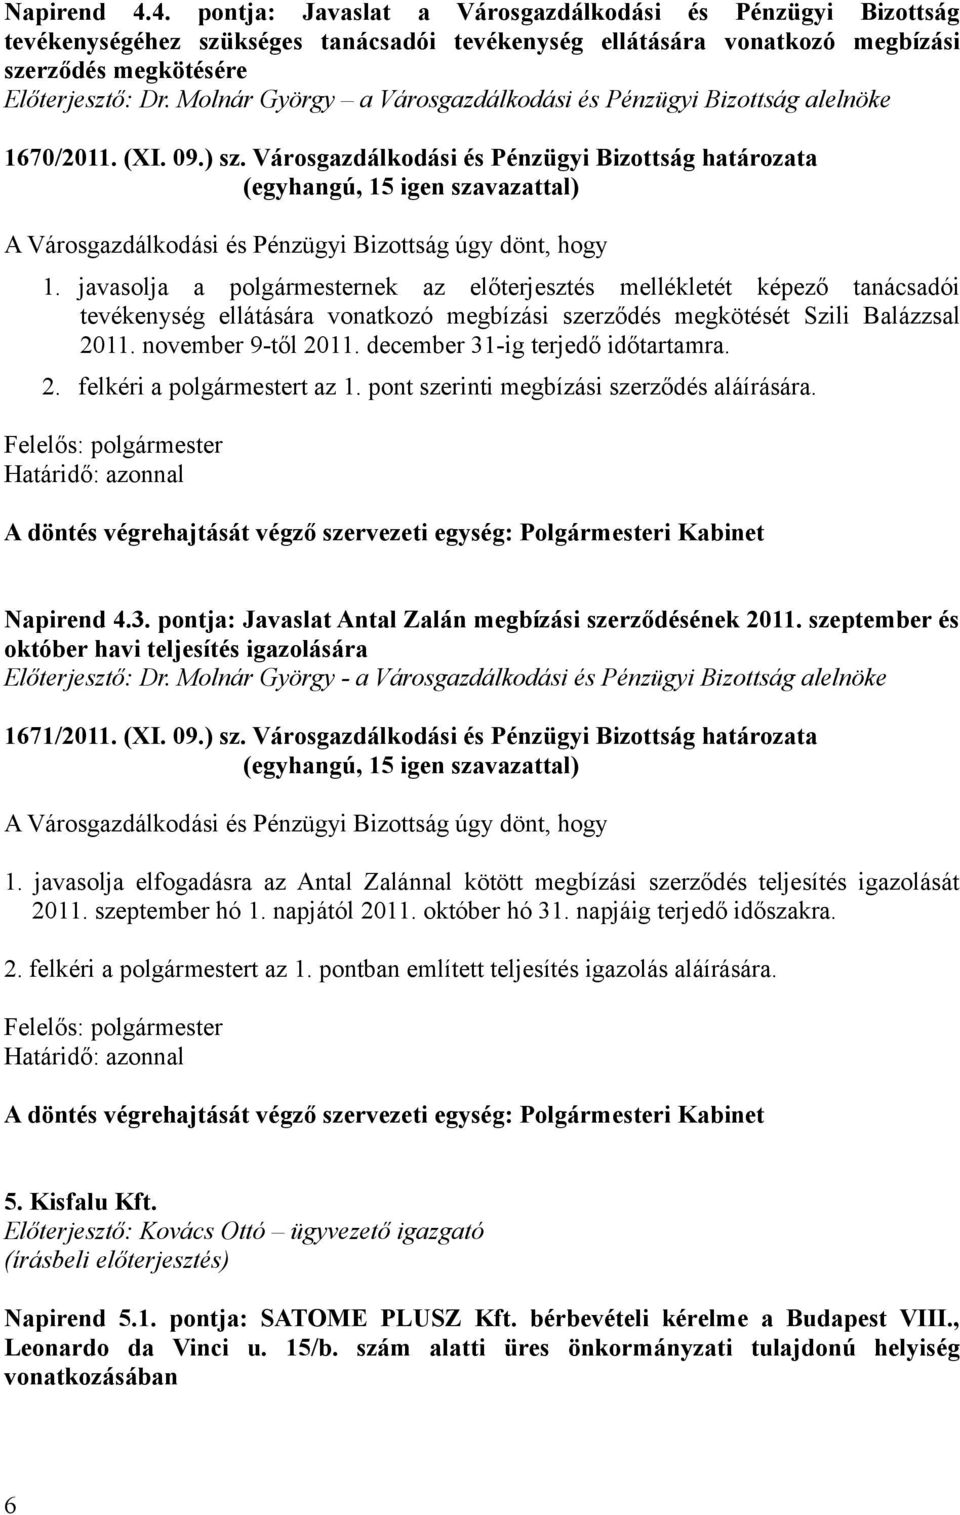 javasolja a polgármesternek az előterjesztés mellékletét képező tanácsadói tevékenység ellátására vonatkozó megbízási szerződés megkötését Szili Balázzsal 2011. november 9-től 2011.